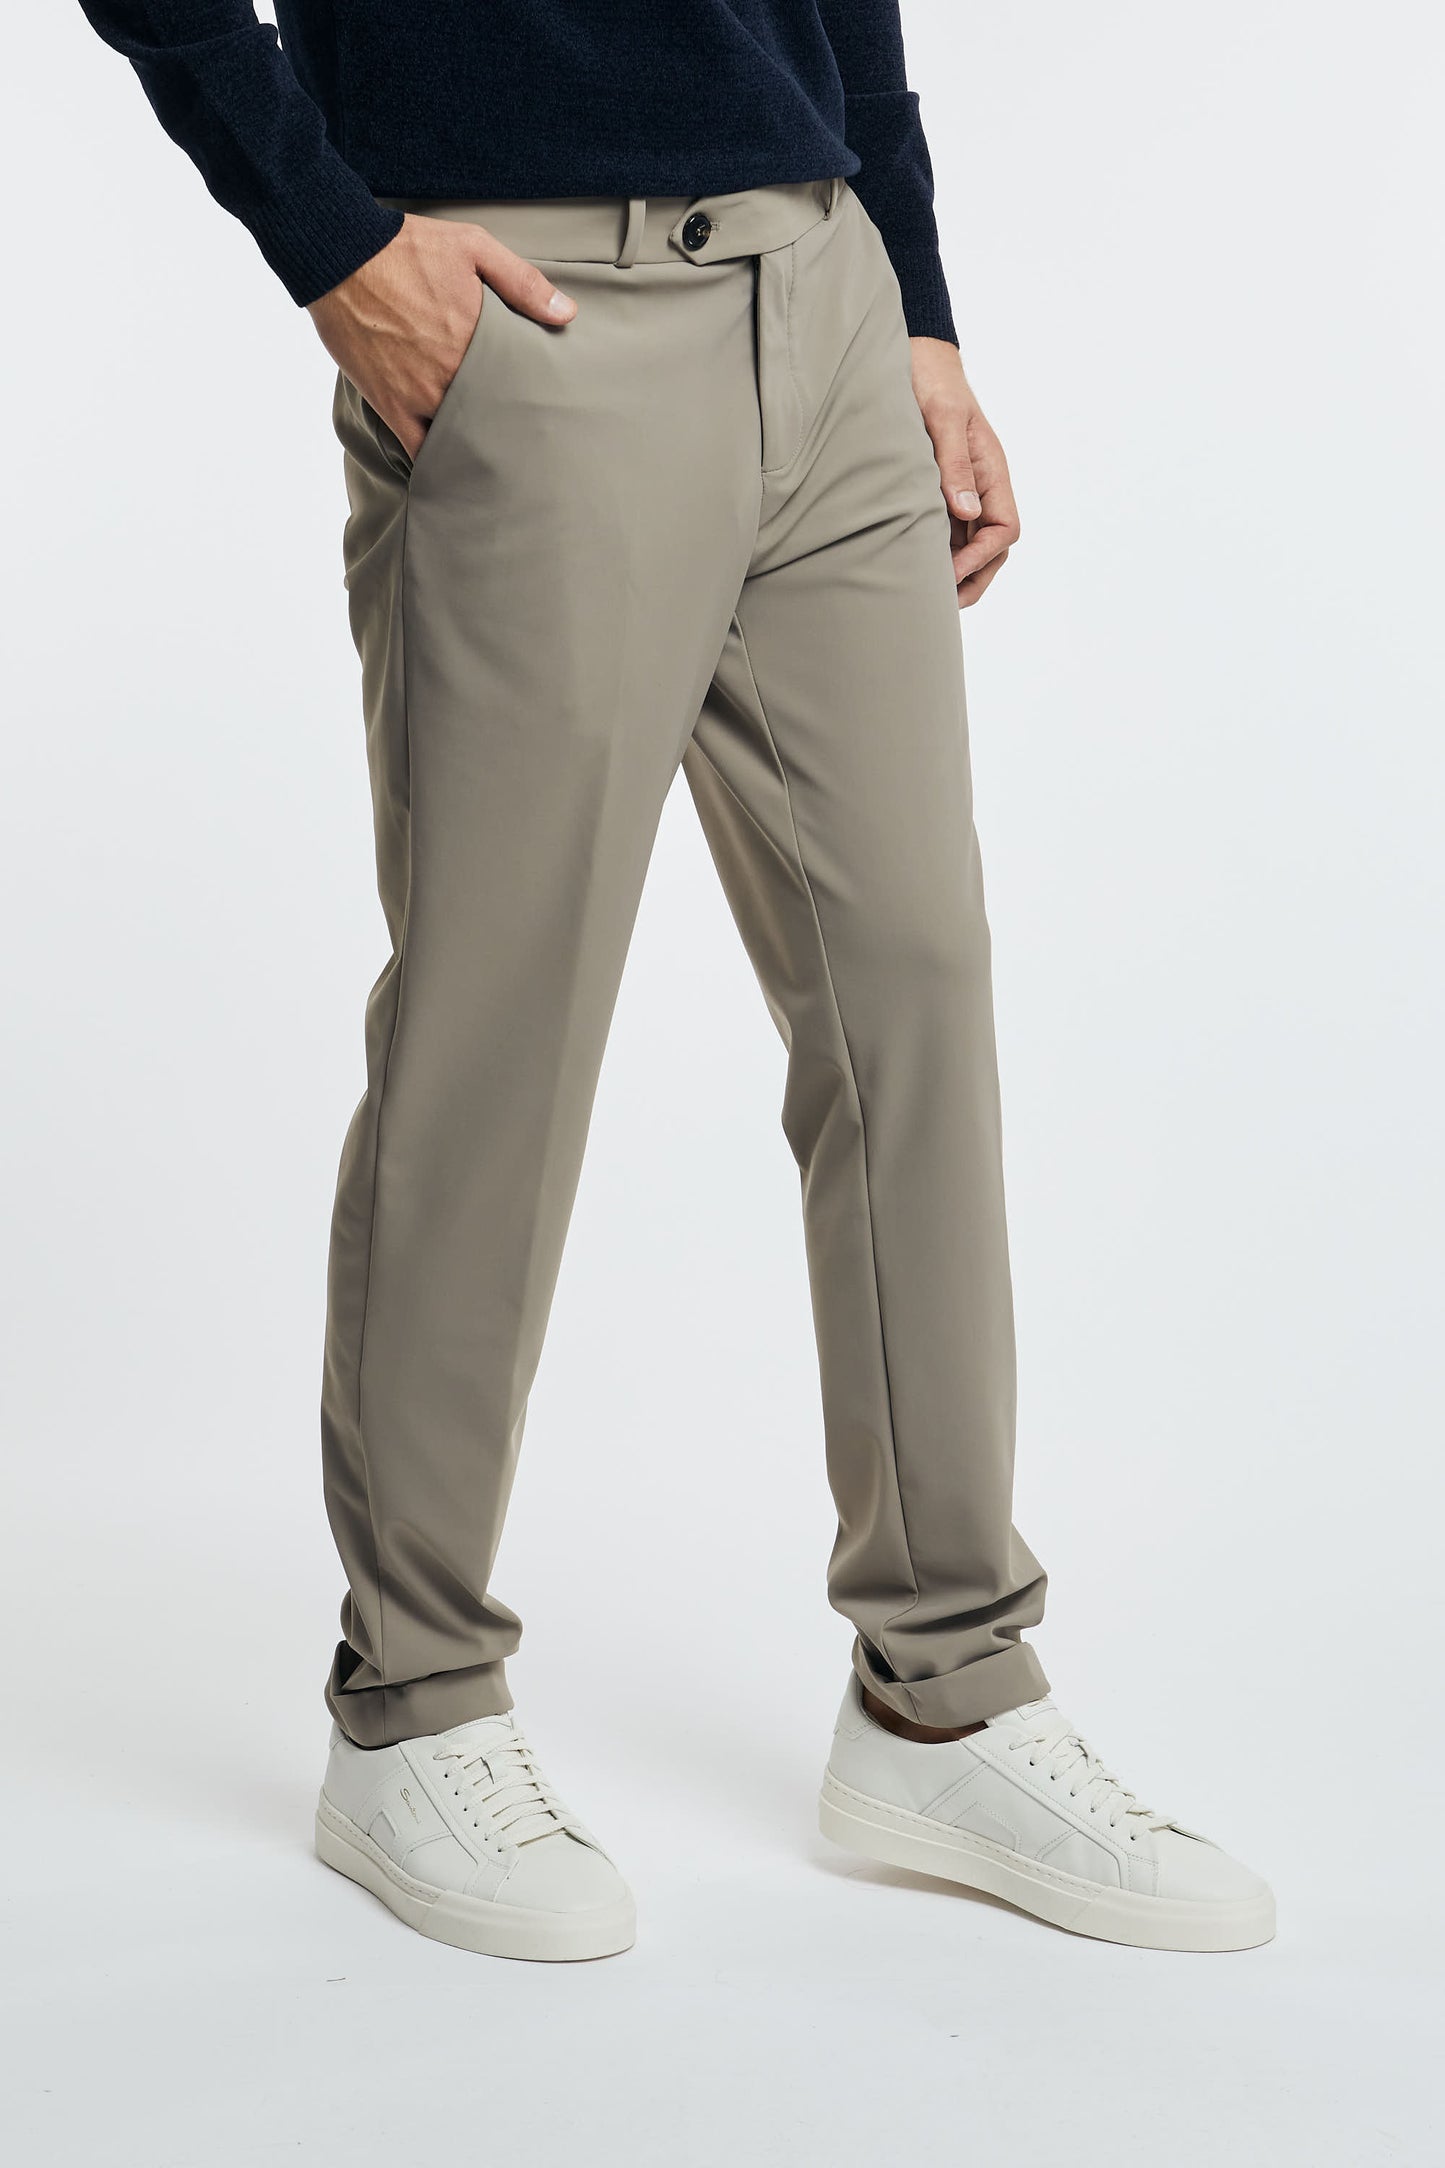 RRD Pantalone Chino in Poliammide/Elastan Grigio con Dettagli Tortora - 2